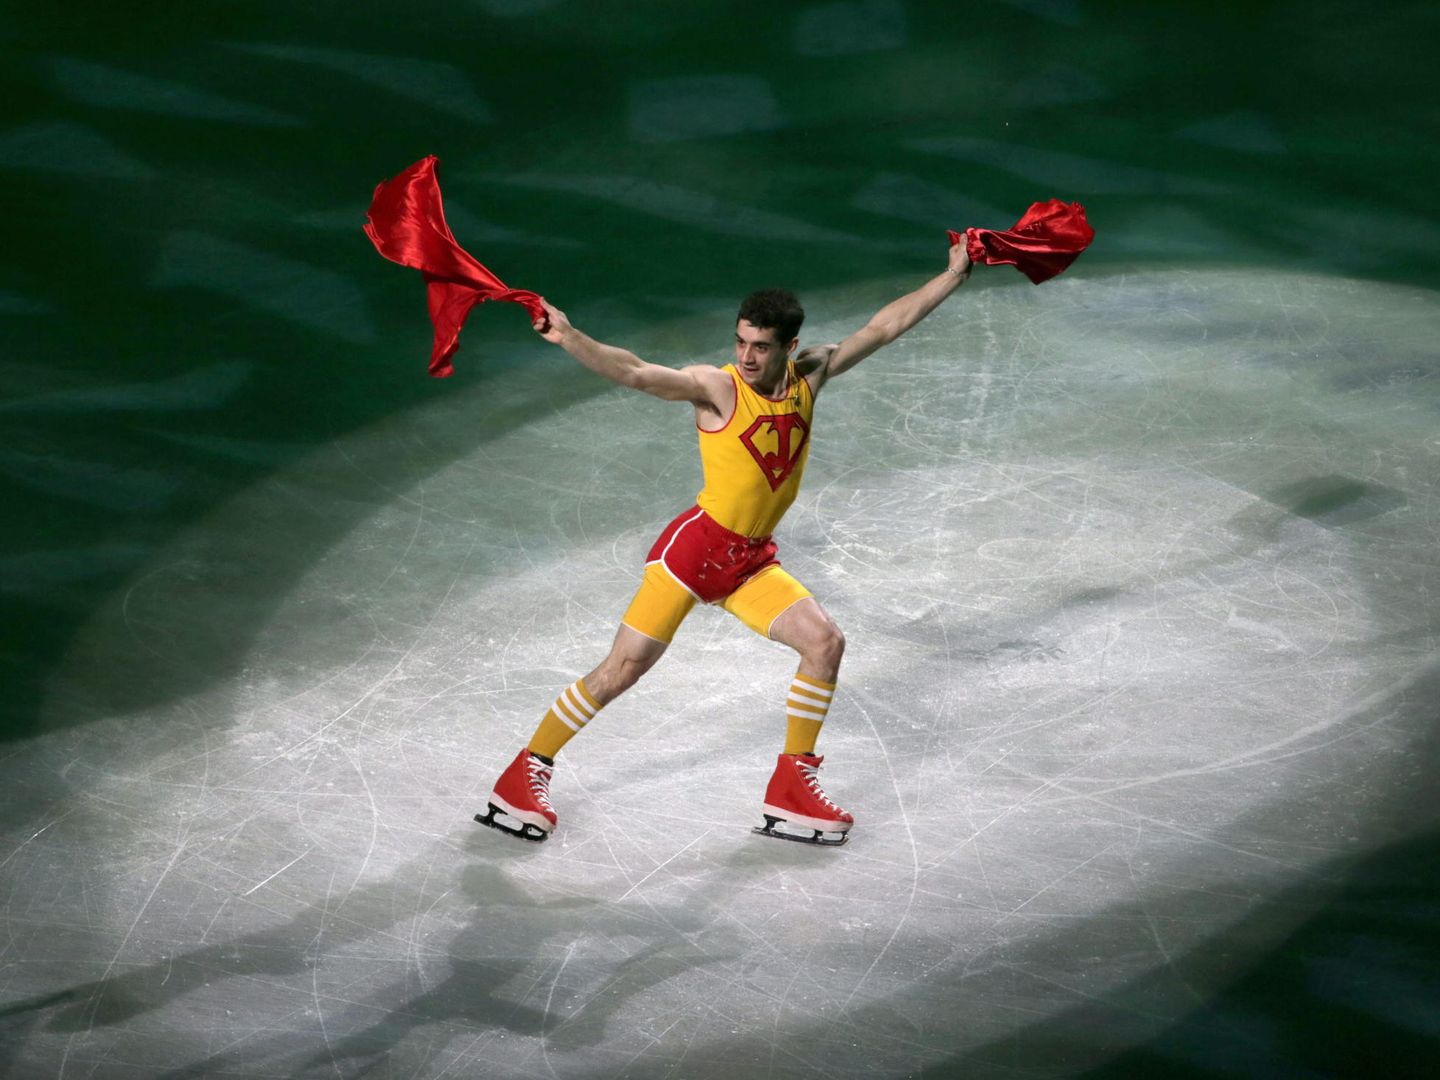 El patinador, vestido de 'SuperJavi' durante una exhibición en 2014. (EFE)